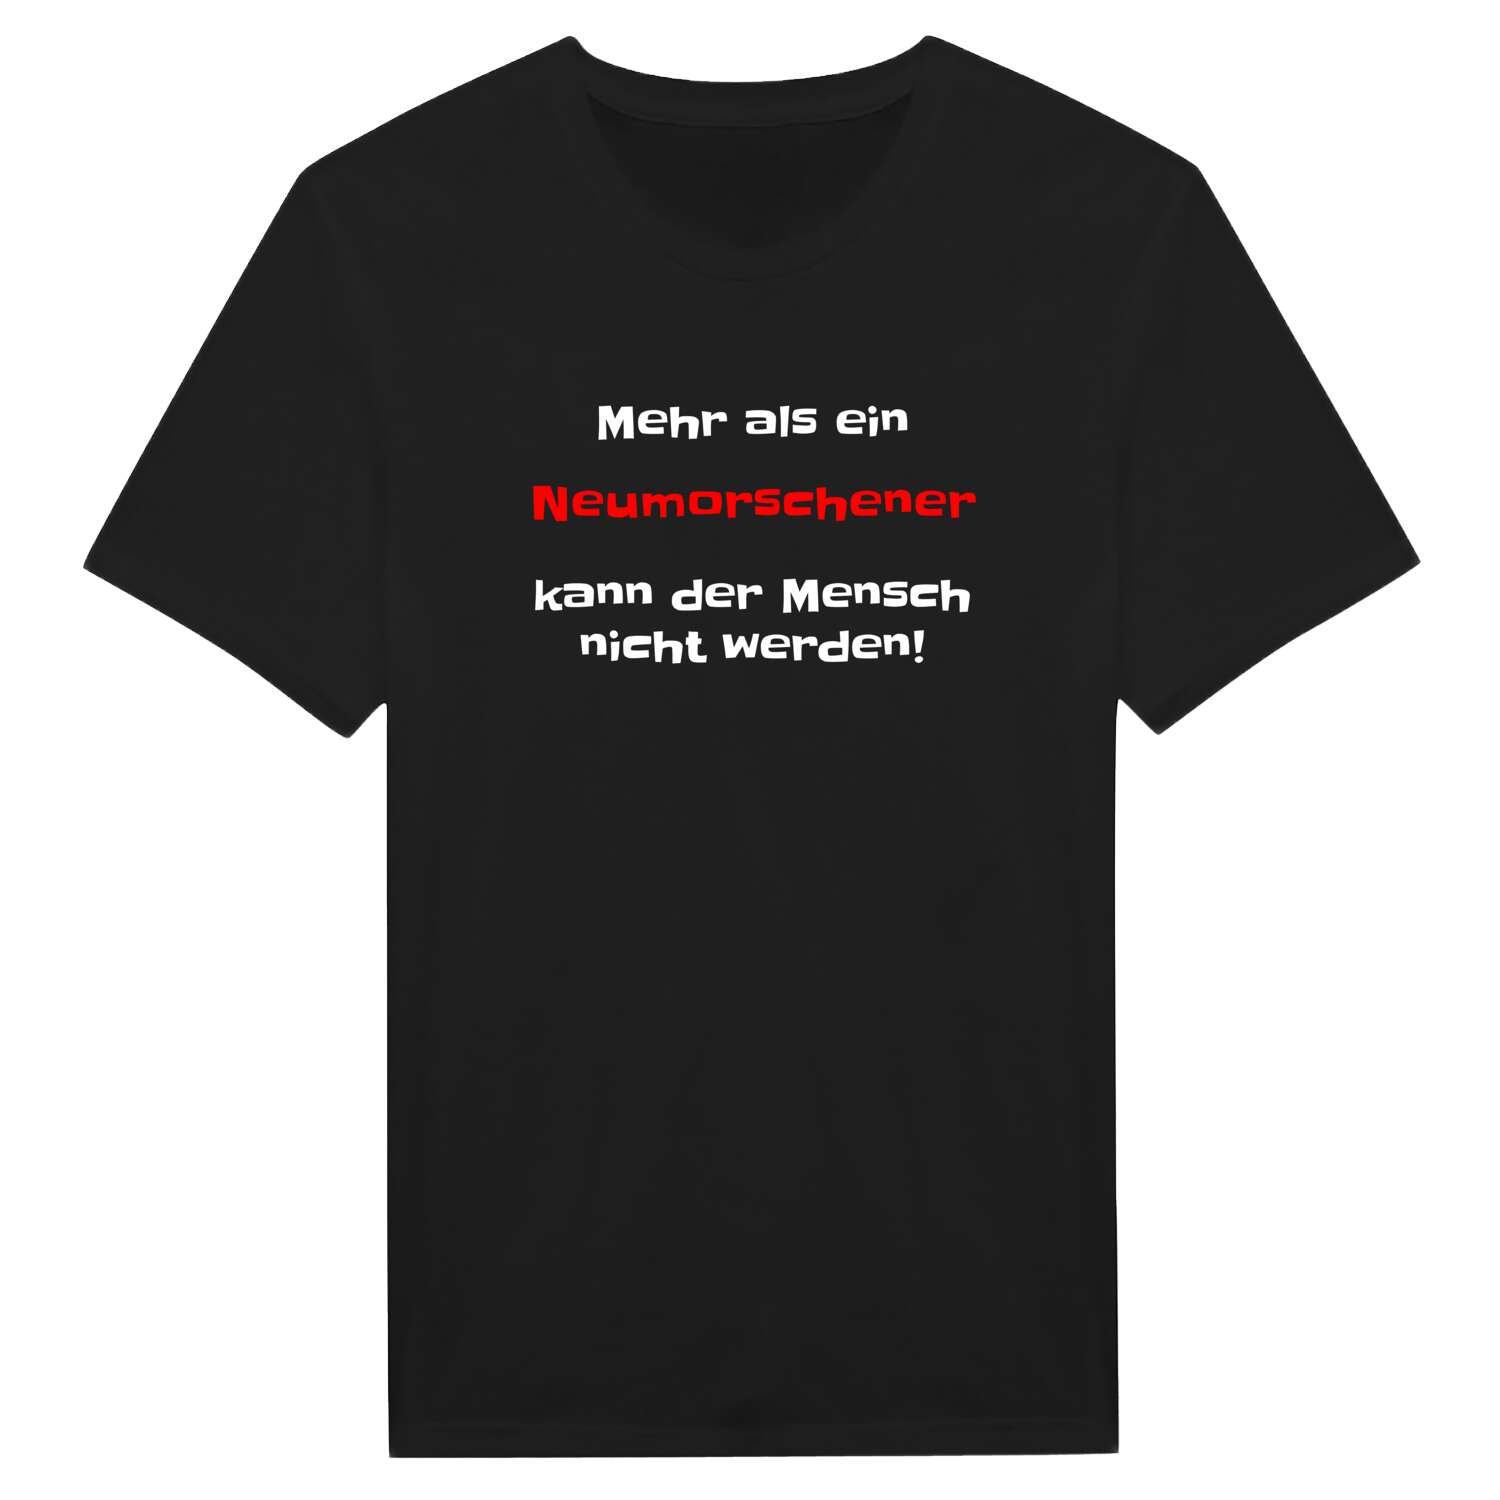 Neumorschen T-Shirt »Mehr als ein«